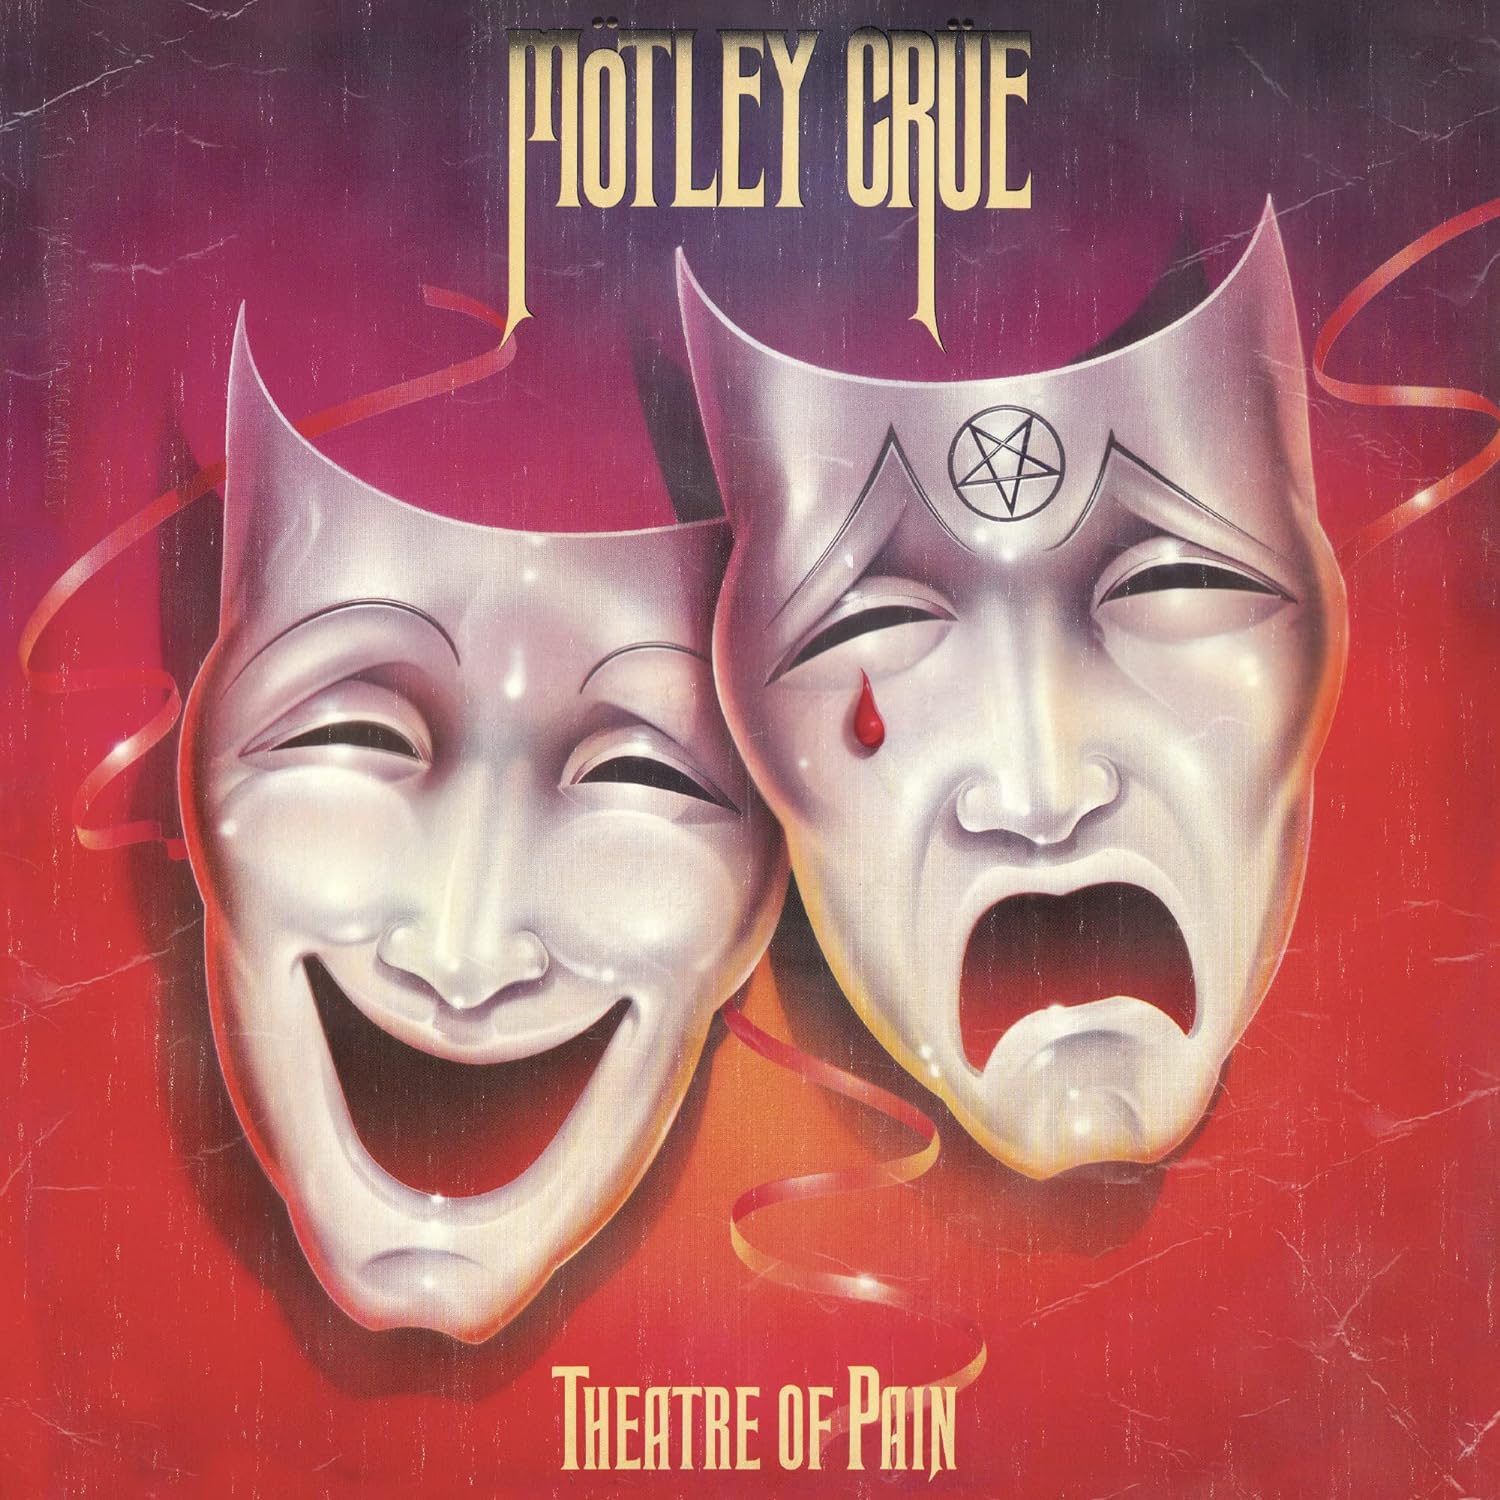 Motley Crue- Theatre Of Pain (White)